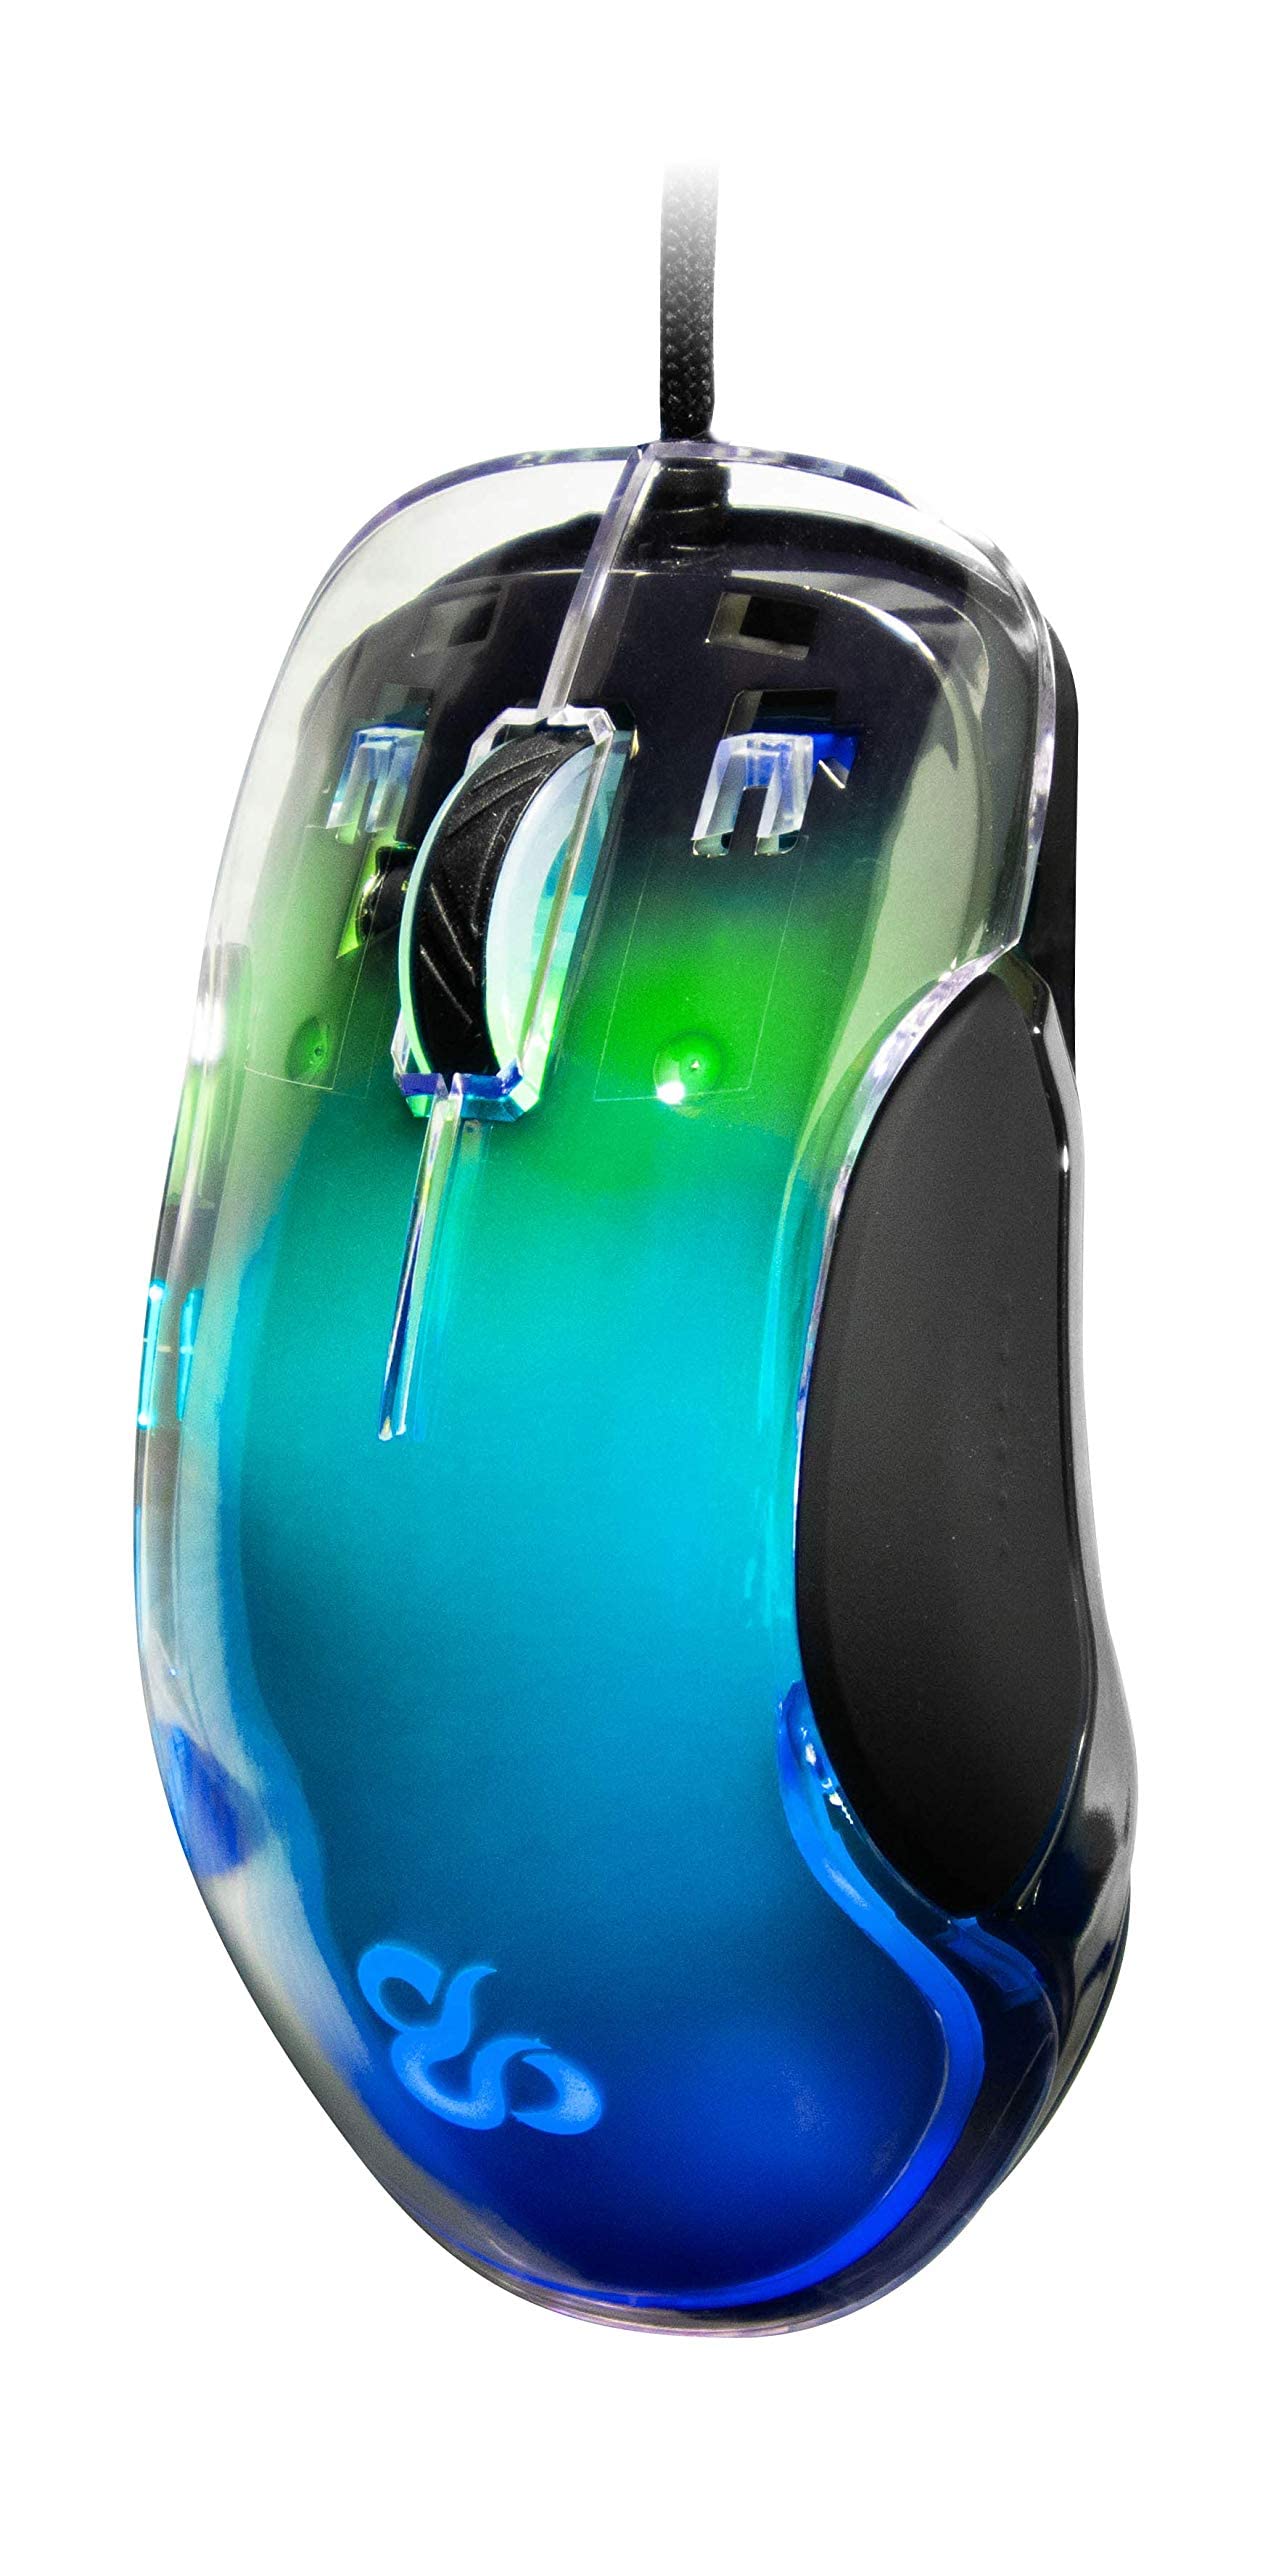 NEWSKILL Lycan Professional Gaming Maus, kabelgebunden, anpassbare RGB-Beleuchtung, optischer Sensor 16000 DPI einstellbar, 5 programmierbare Tasten, 50G, PC/Mac, transluzentes Plastik, Transparent